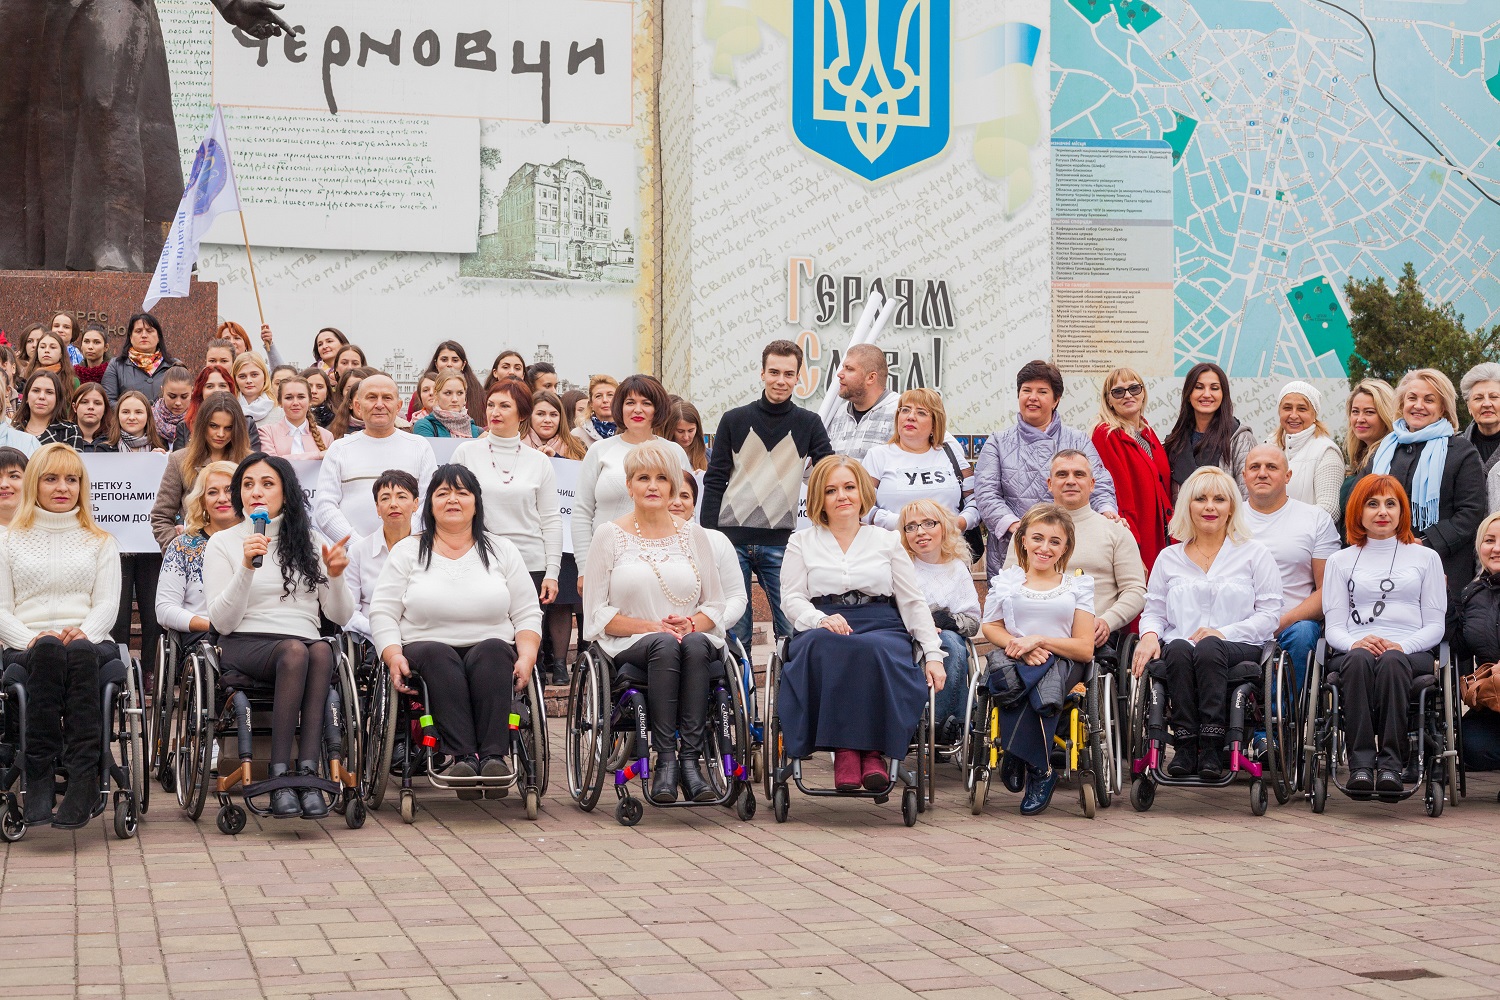 NGO  in Ukraine